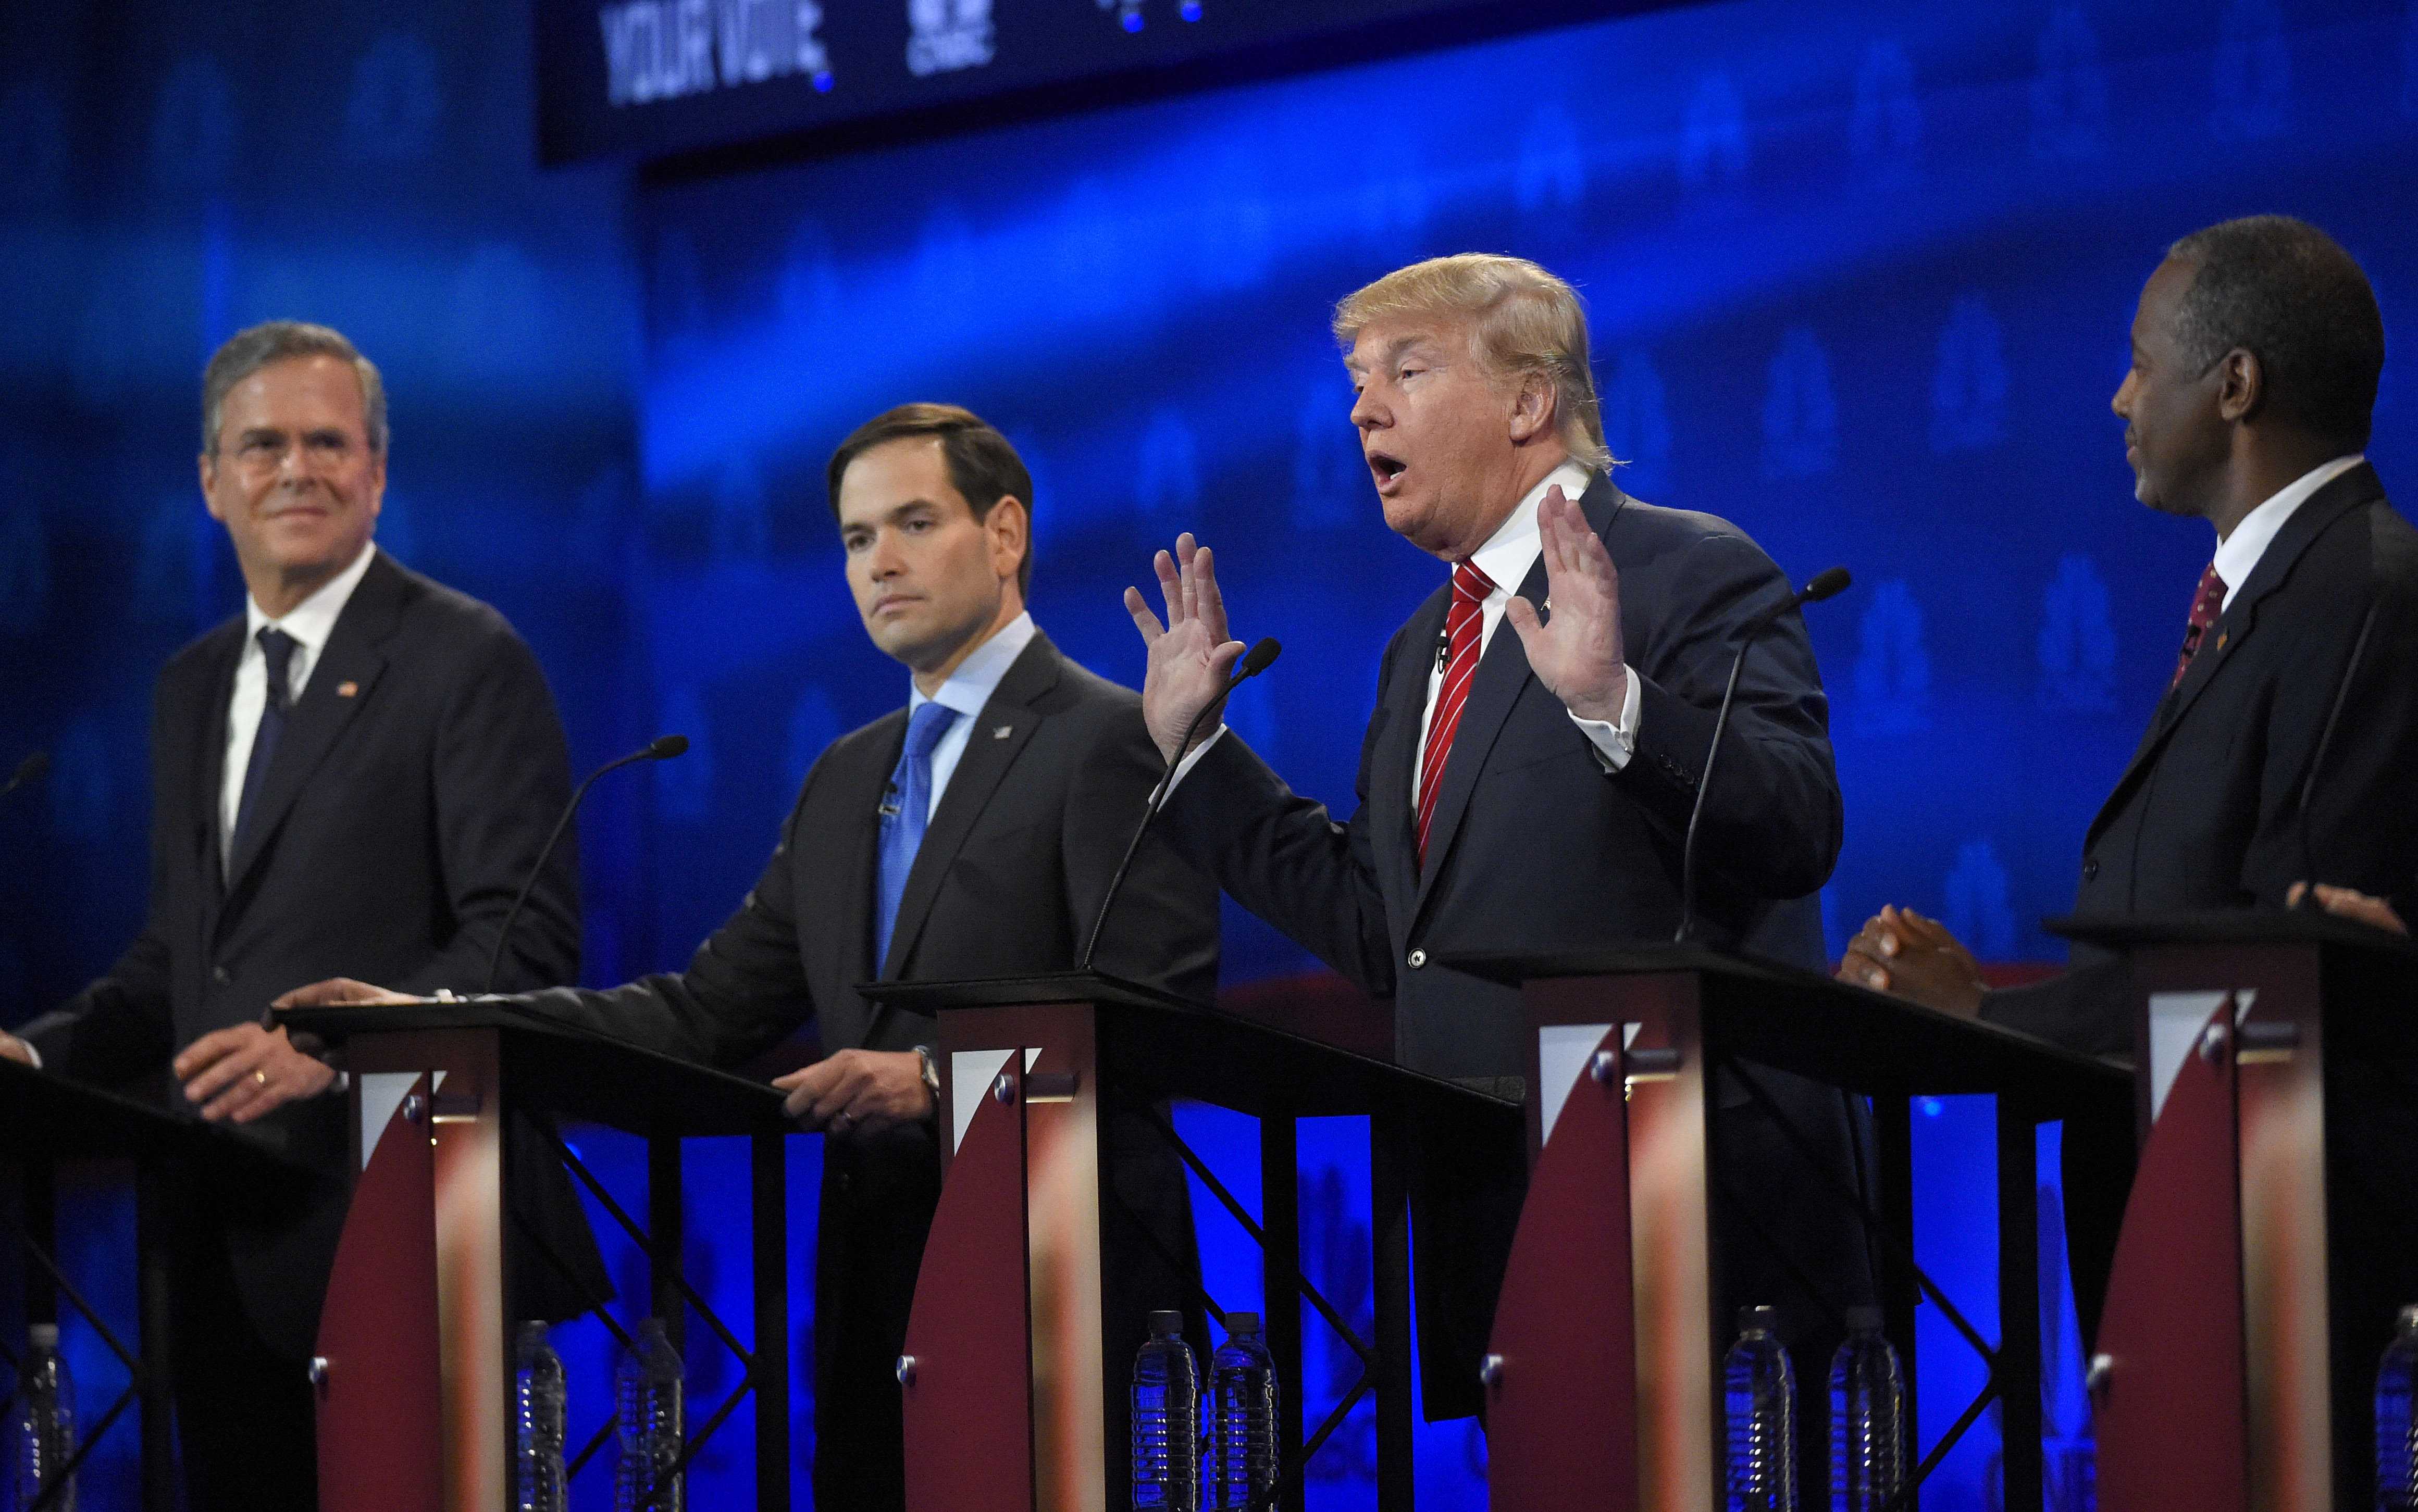 Wednesday night’s Republican Presidential debate The DePaulia